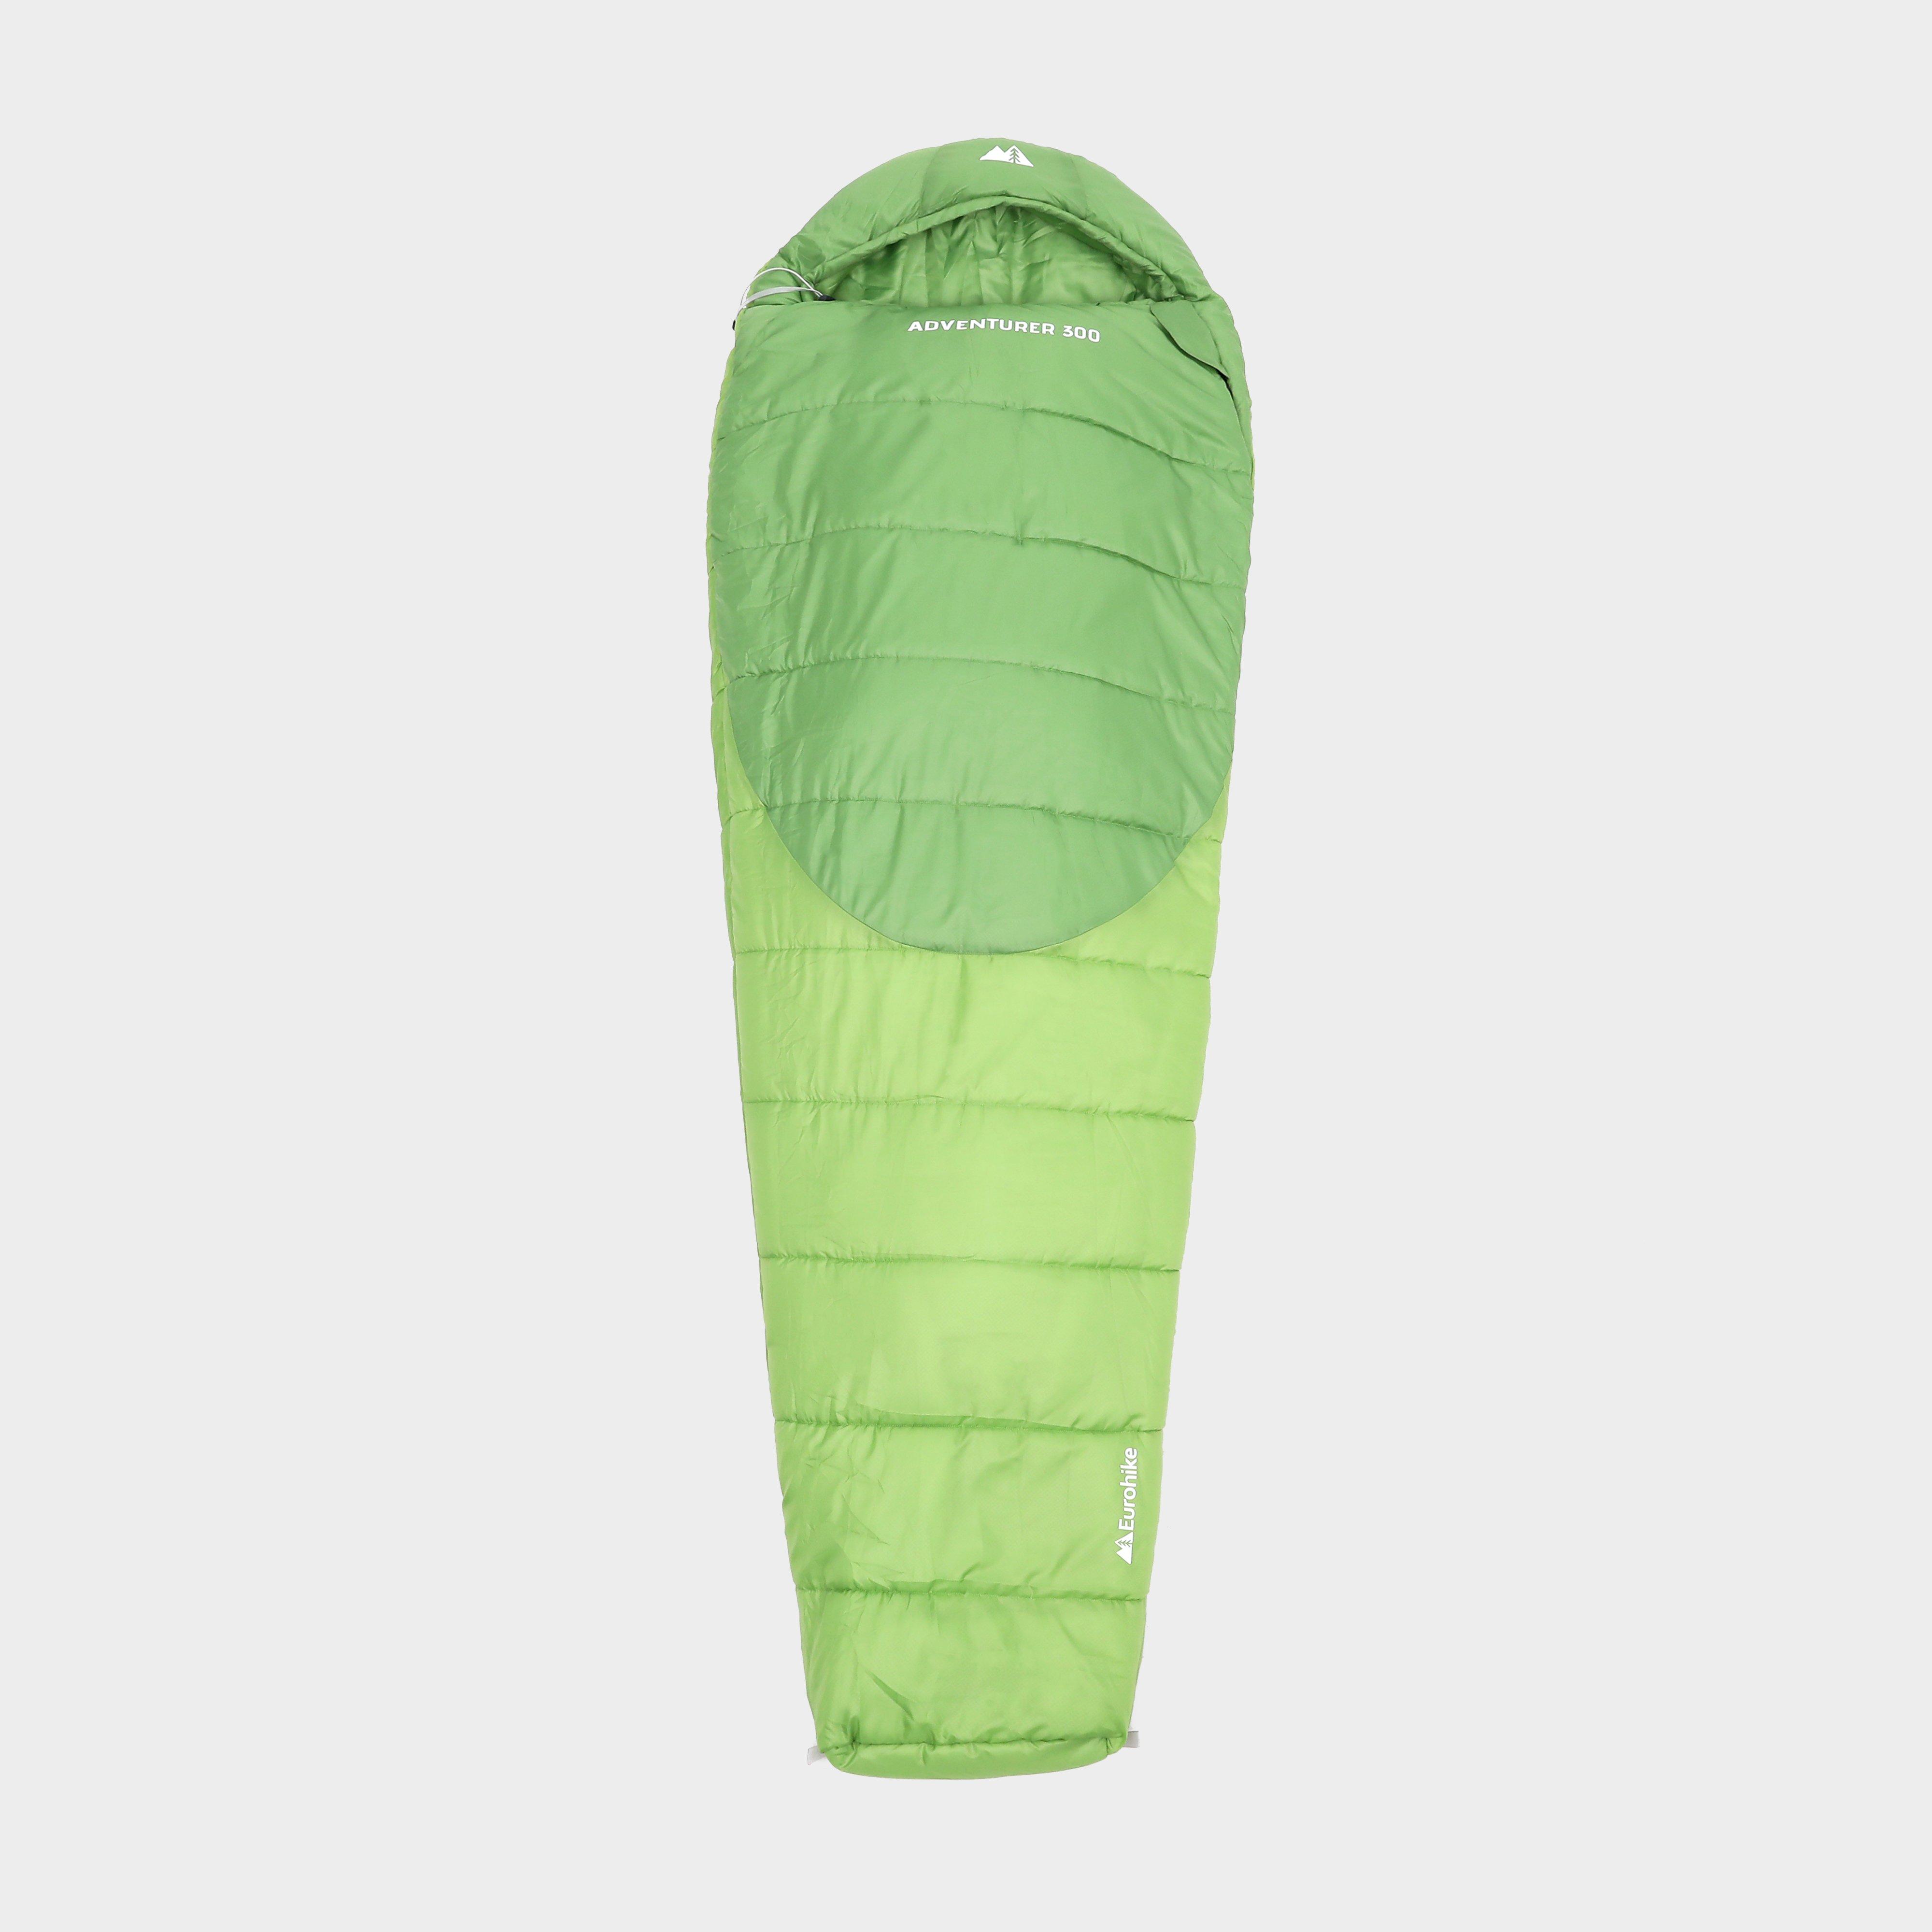 Adventurer 300 Sleeping Bag - Green, Green